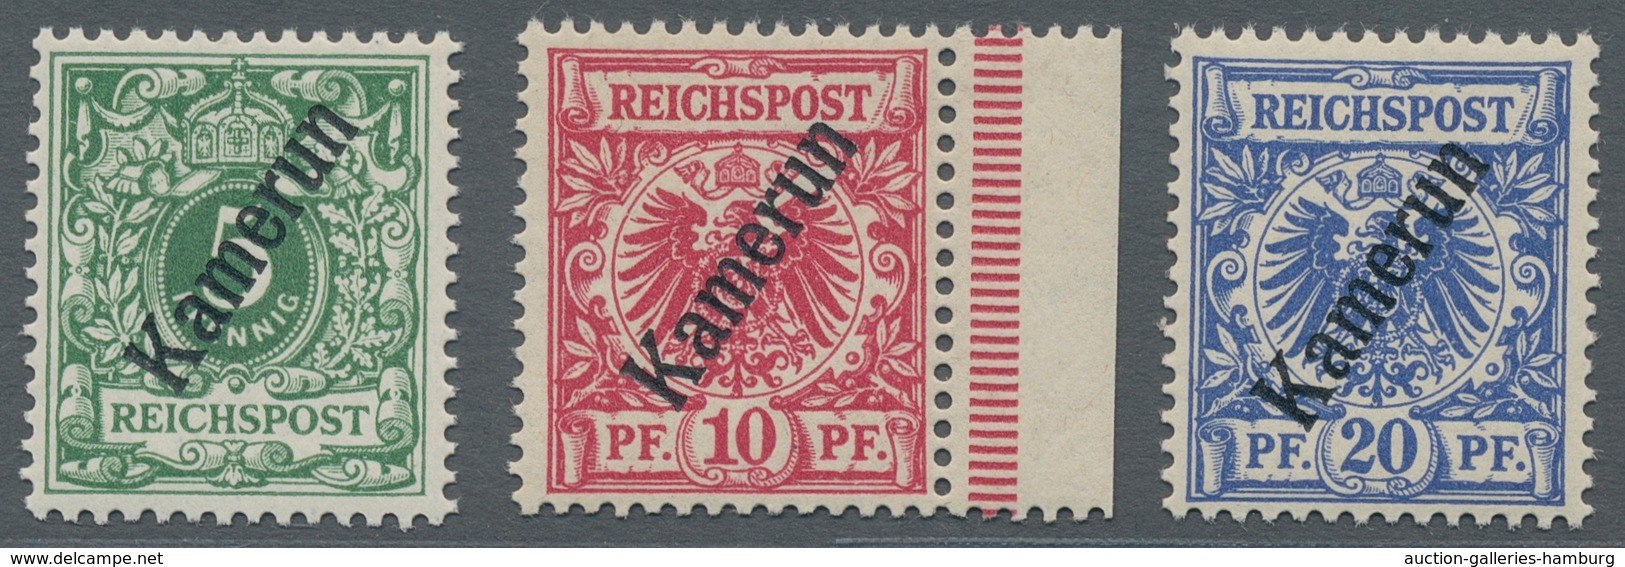 Deutsche Kolonien - Kamerun: 1897, 3-50 Pf Krone/Adler, kplt. postfrischer Satz, dabei die 25 Pf als